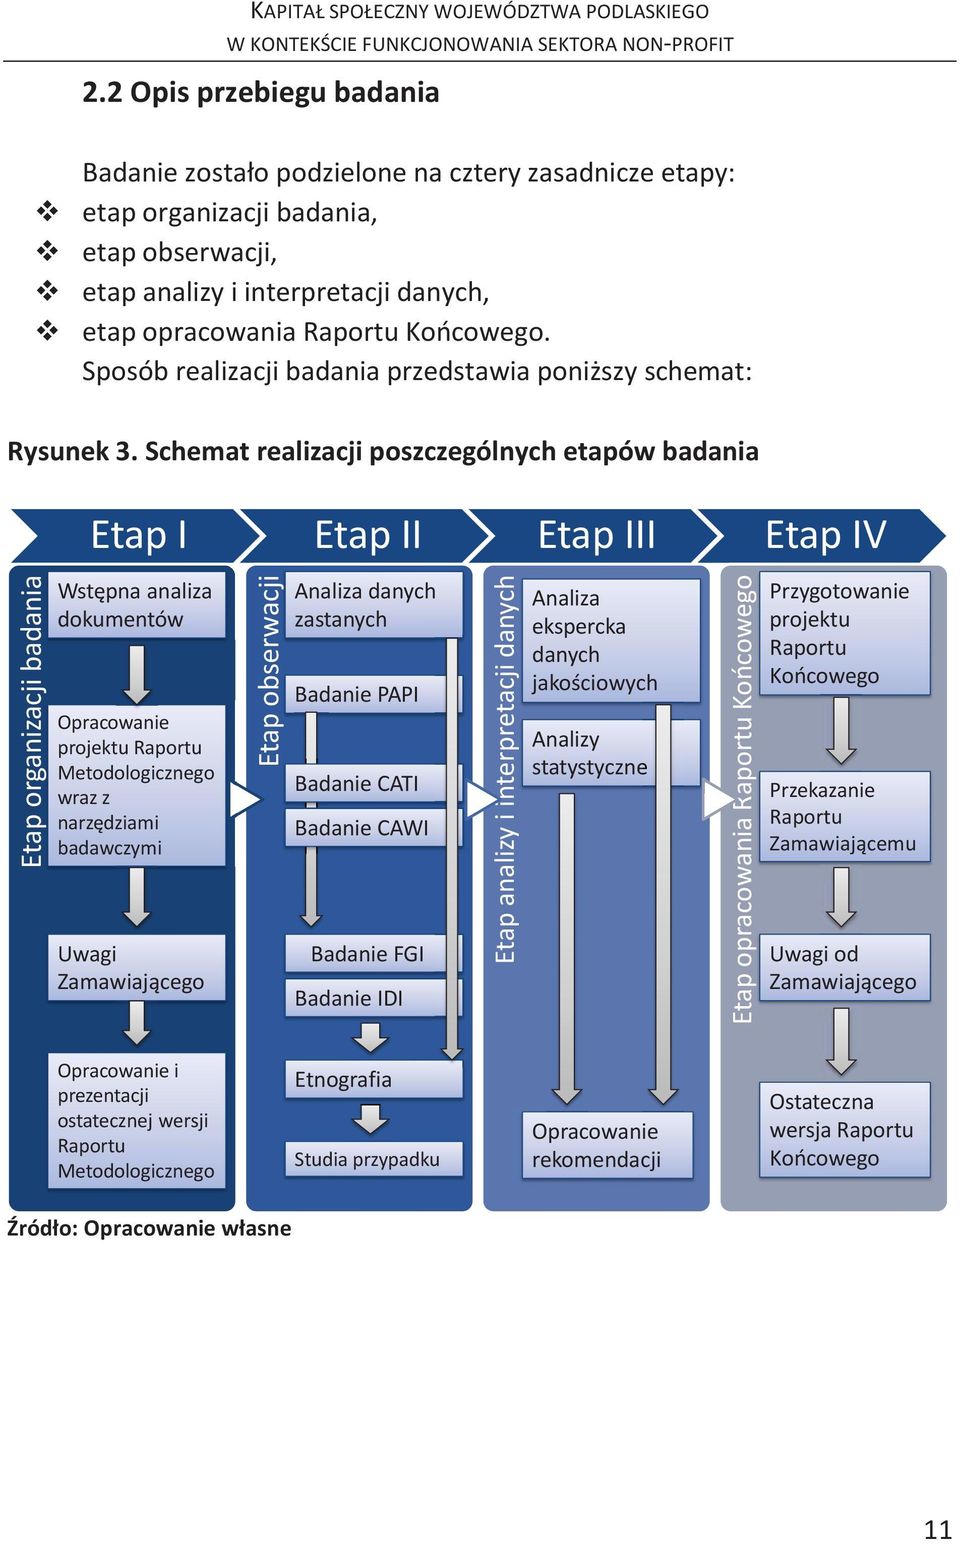 Schemat realizacji poszczególnych etapów badania Etap I Etap II Etap III Etap IV Etap organizacji badania Wstępna analiza dokumentów Opracowanie projektu Raportu Metodologicznego wraz z narzędziami